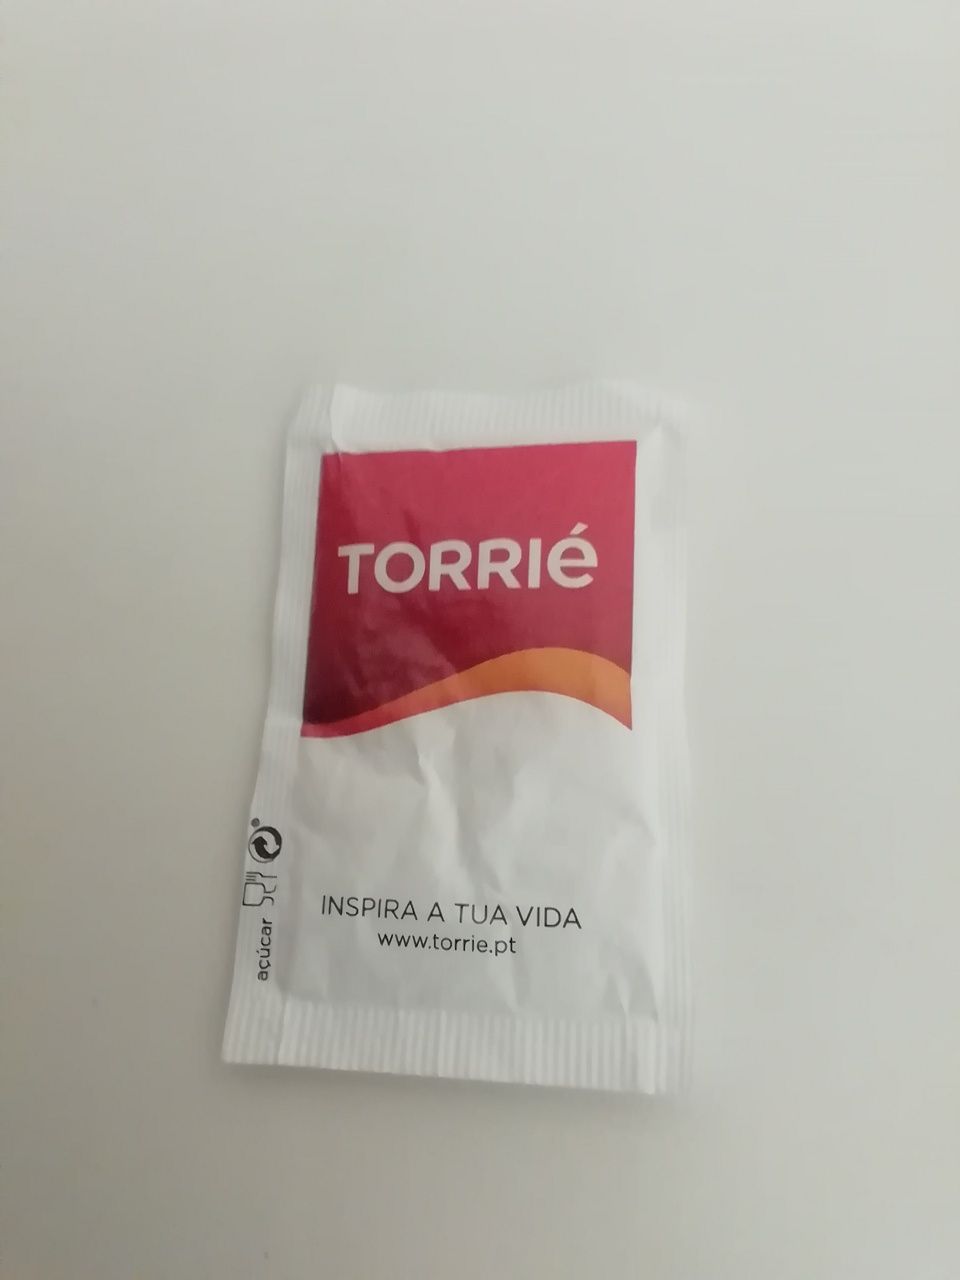 Pacote de açúcar Torrié - Inspira o legado